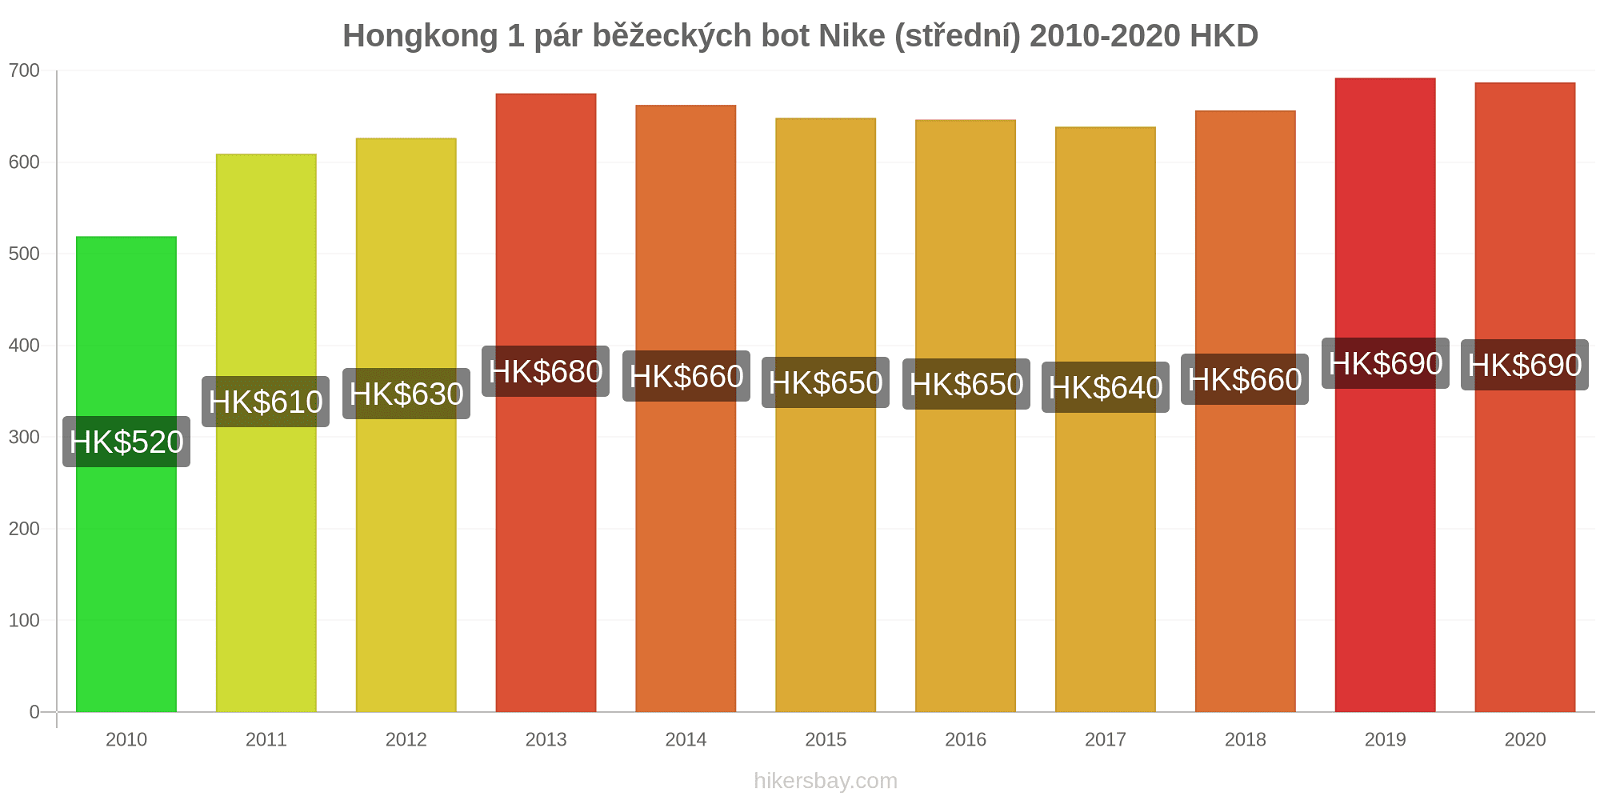 Hongkong změny cen 1 pár běžeckých bot Nike (střední) hikersbay.com